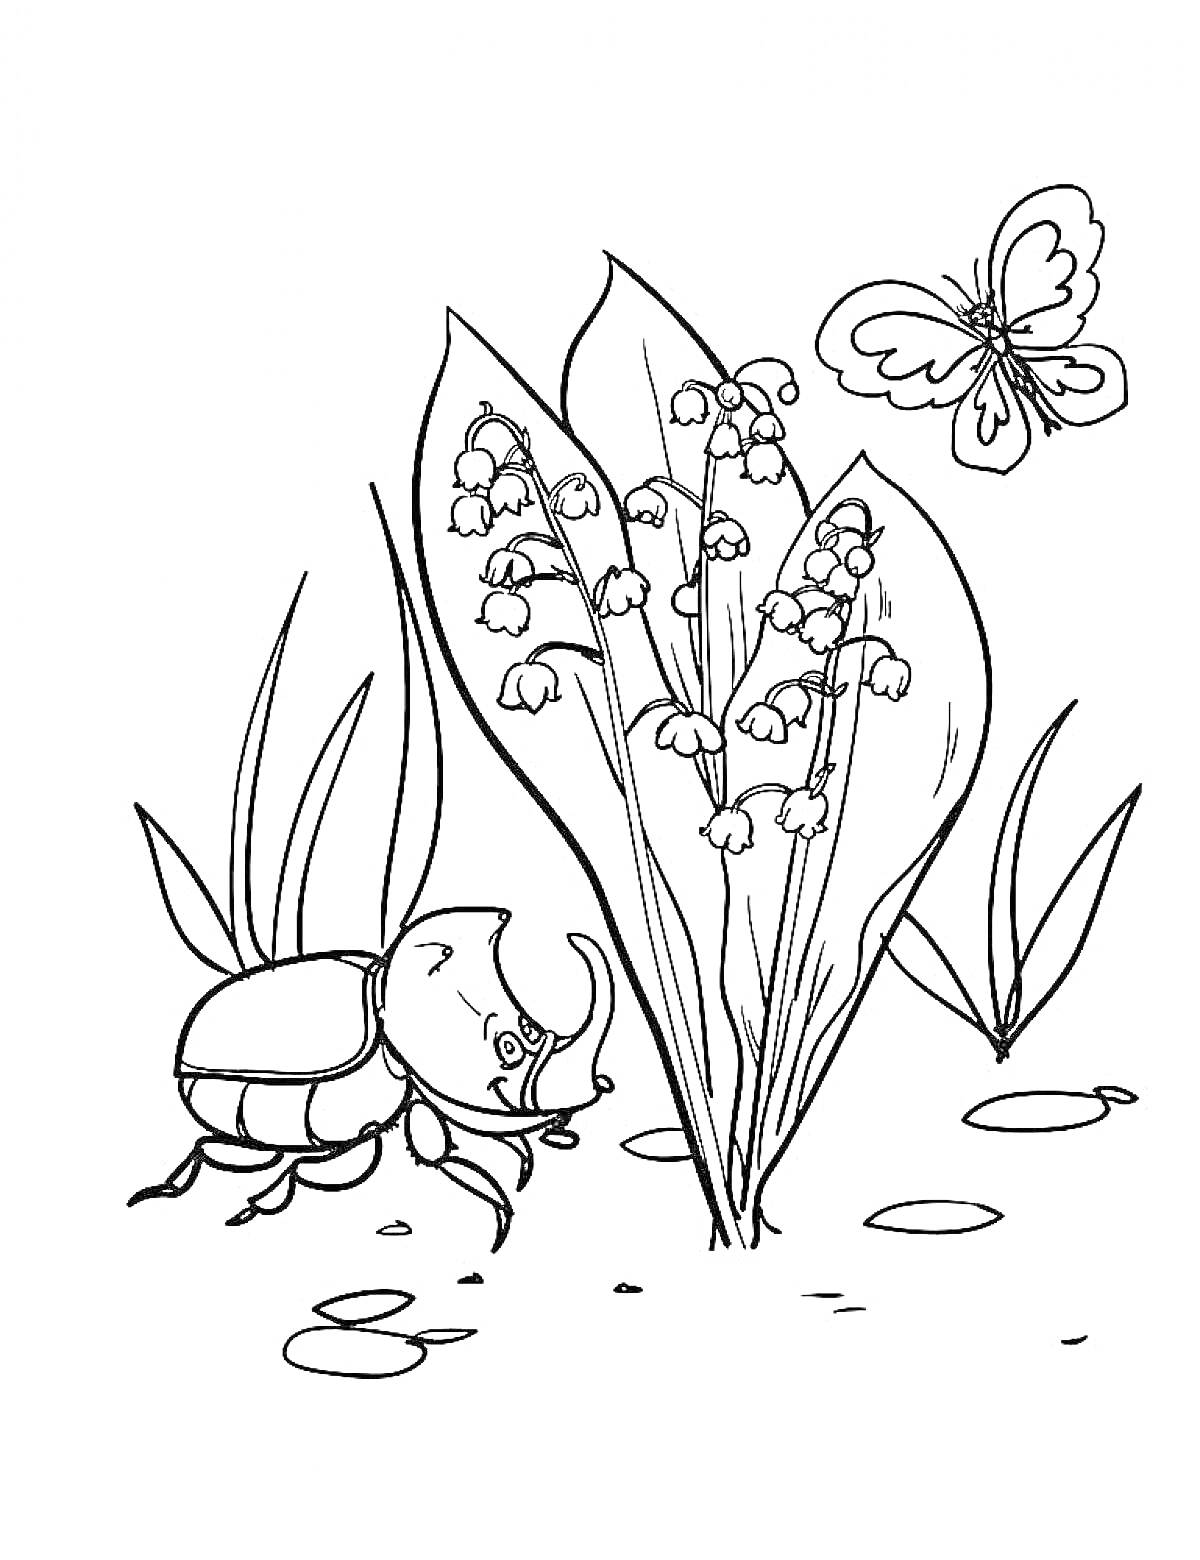 Раскраска Ландыш, жук и бабочка на траве